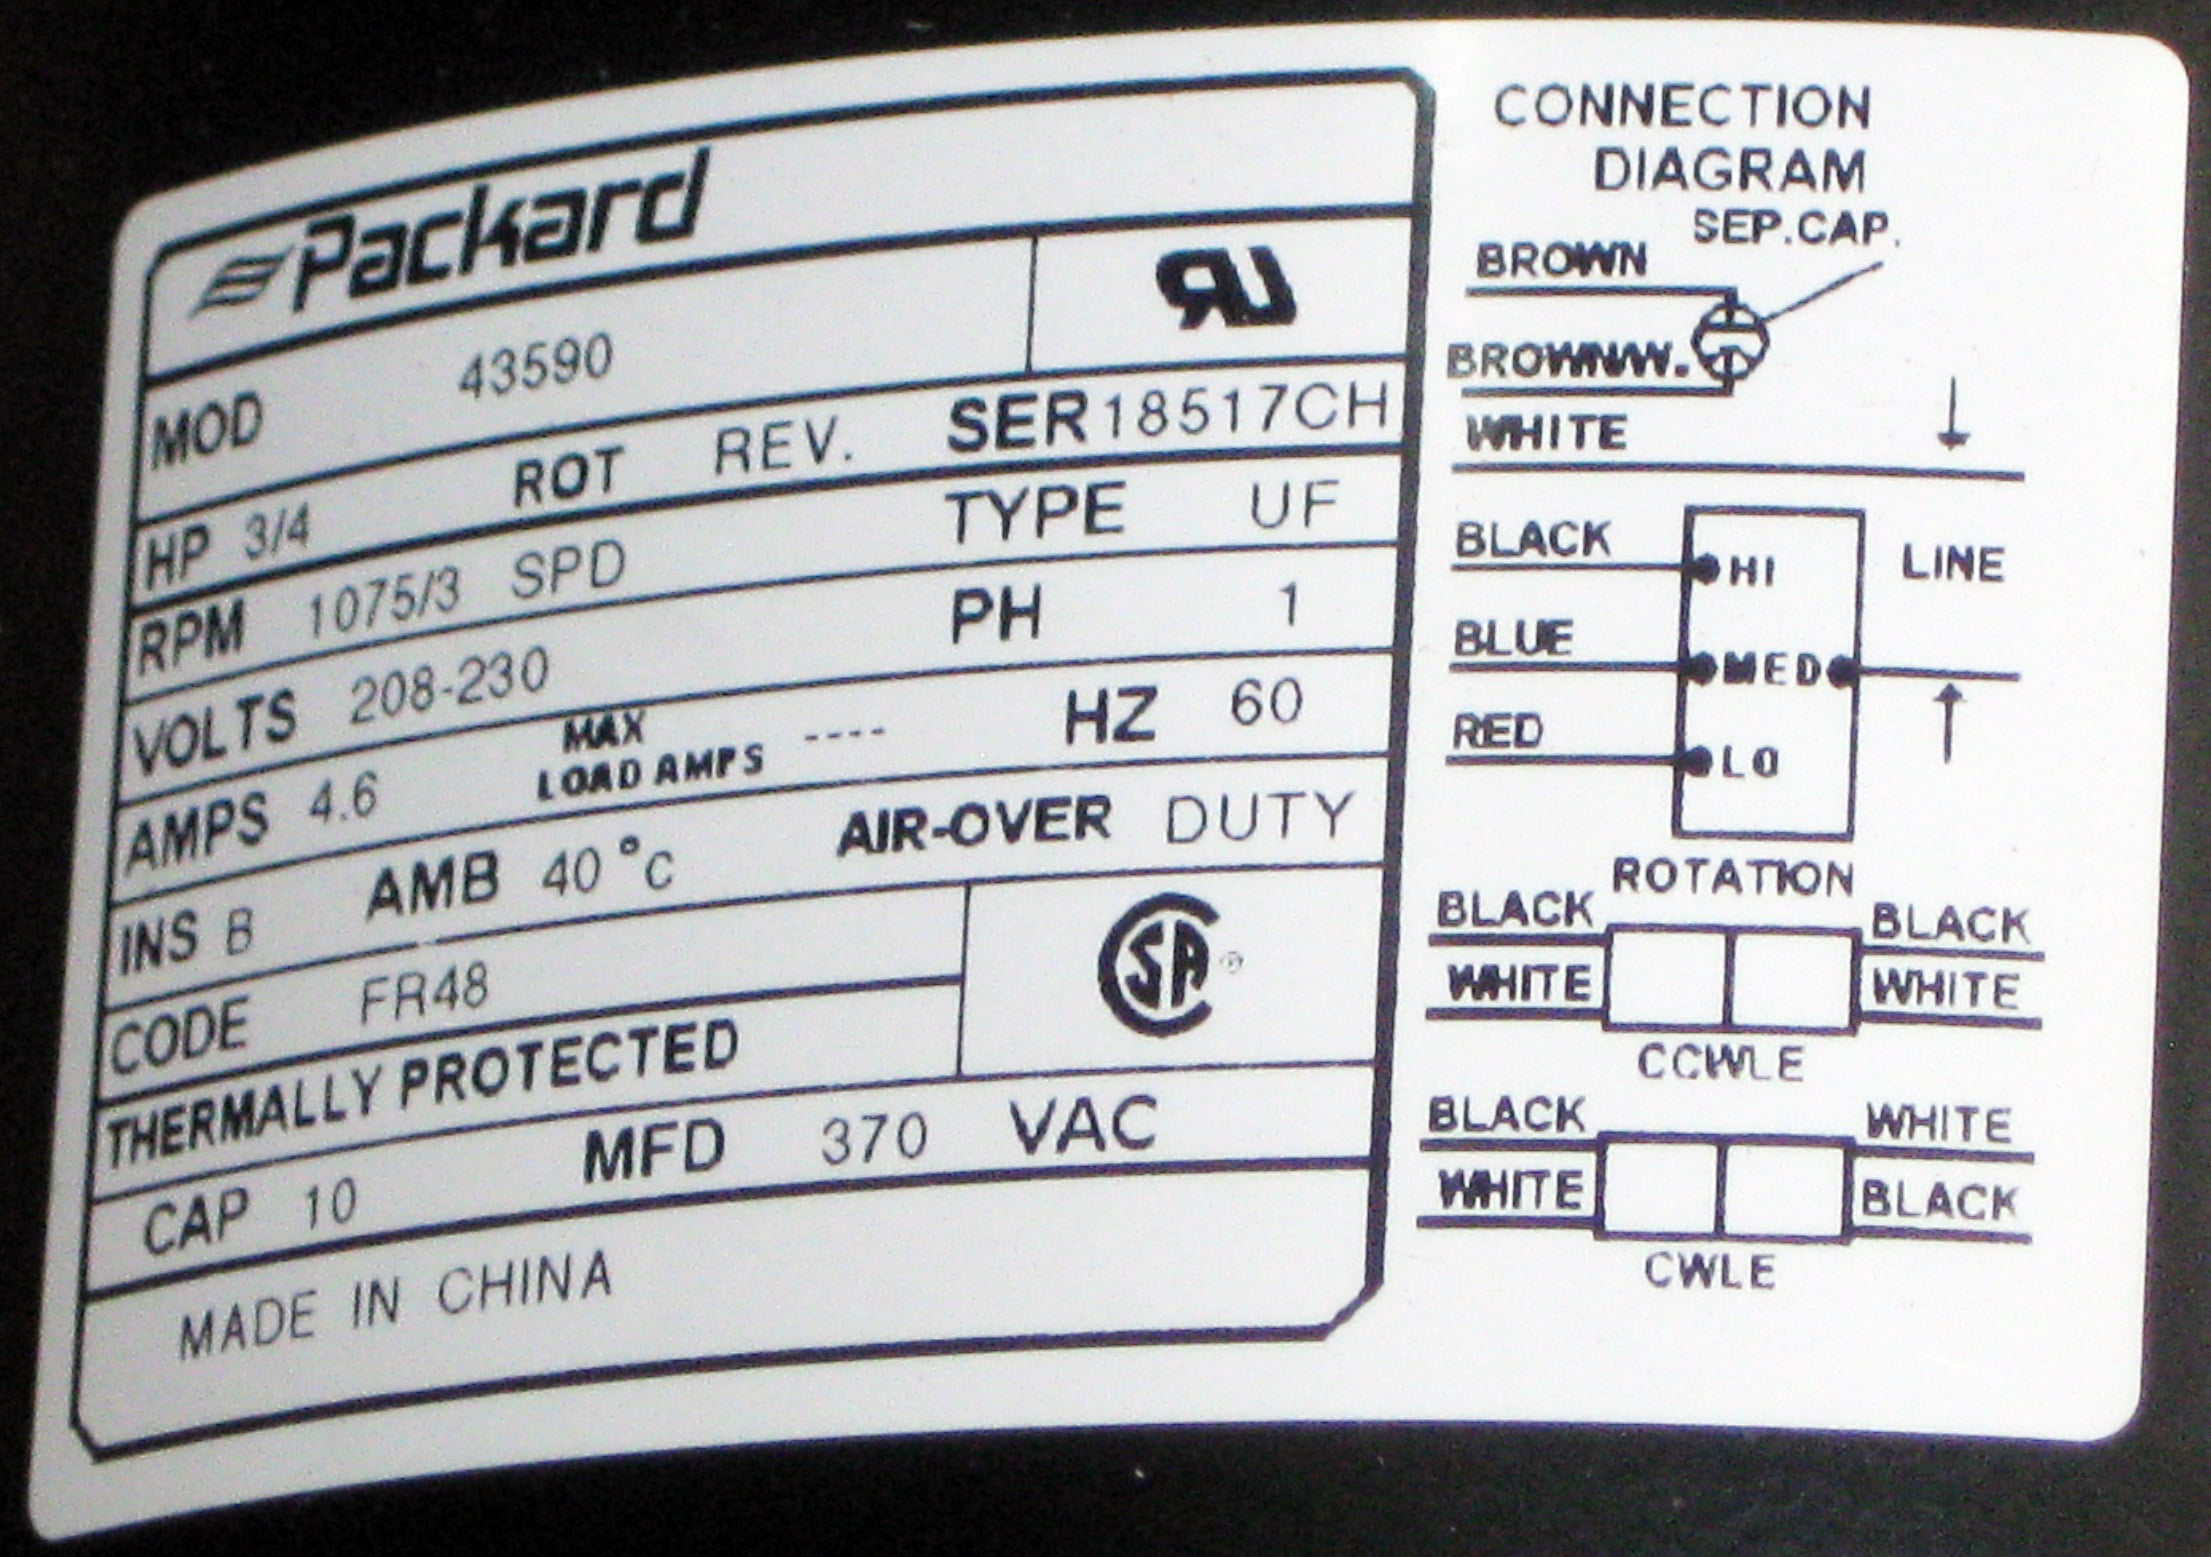 Packard Inch Diameter Motor 208-230 Volts 1075 RPM by Packard - 4